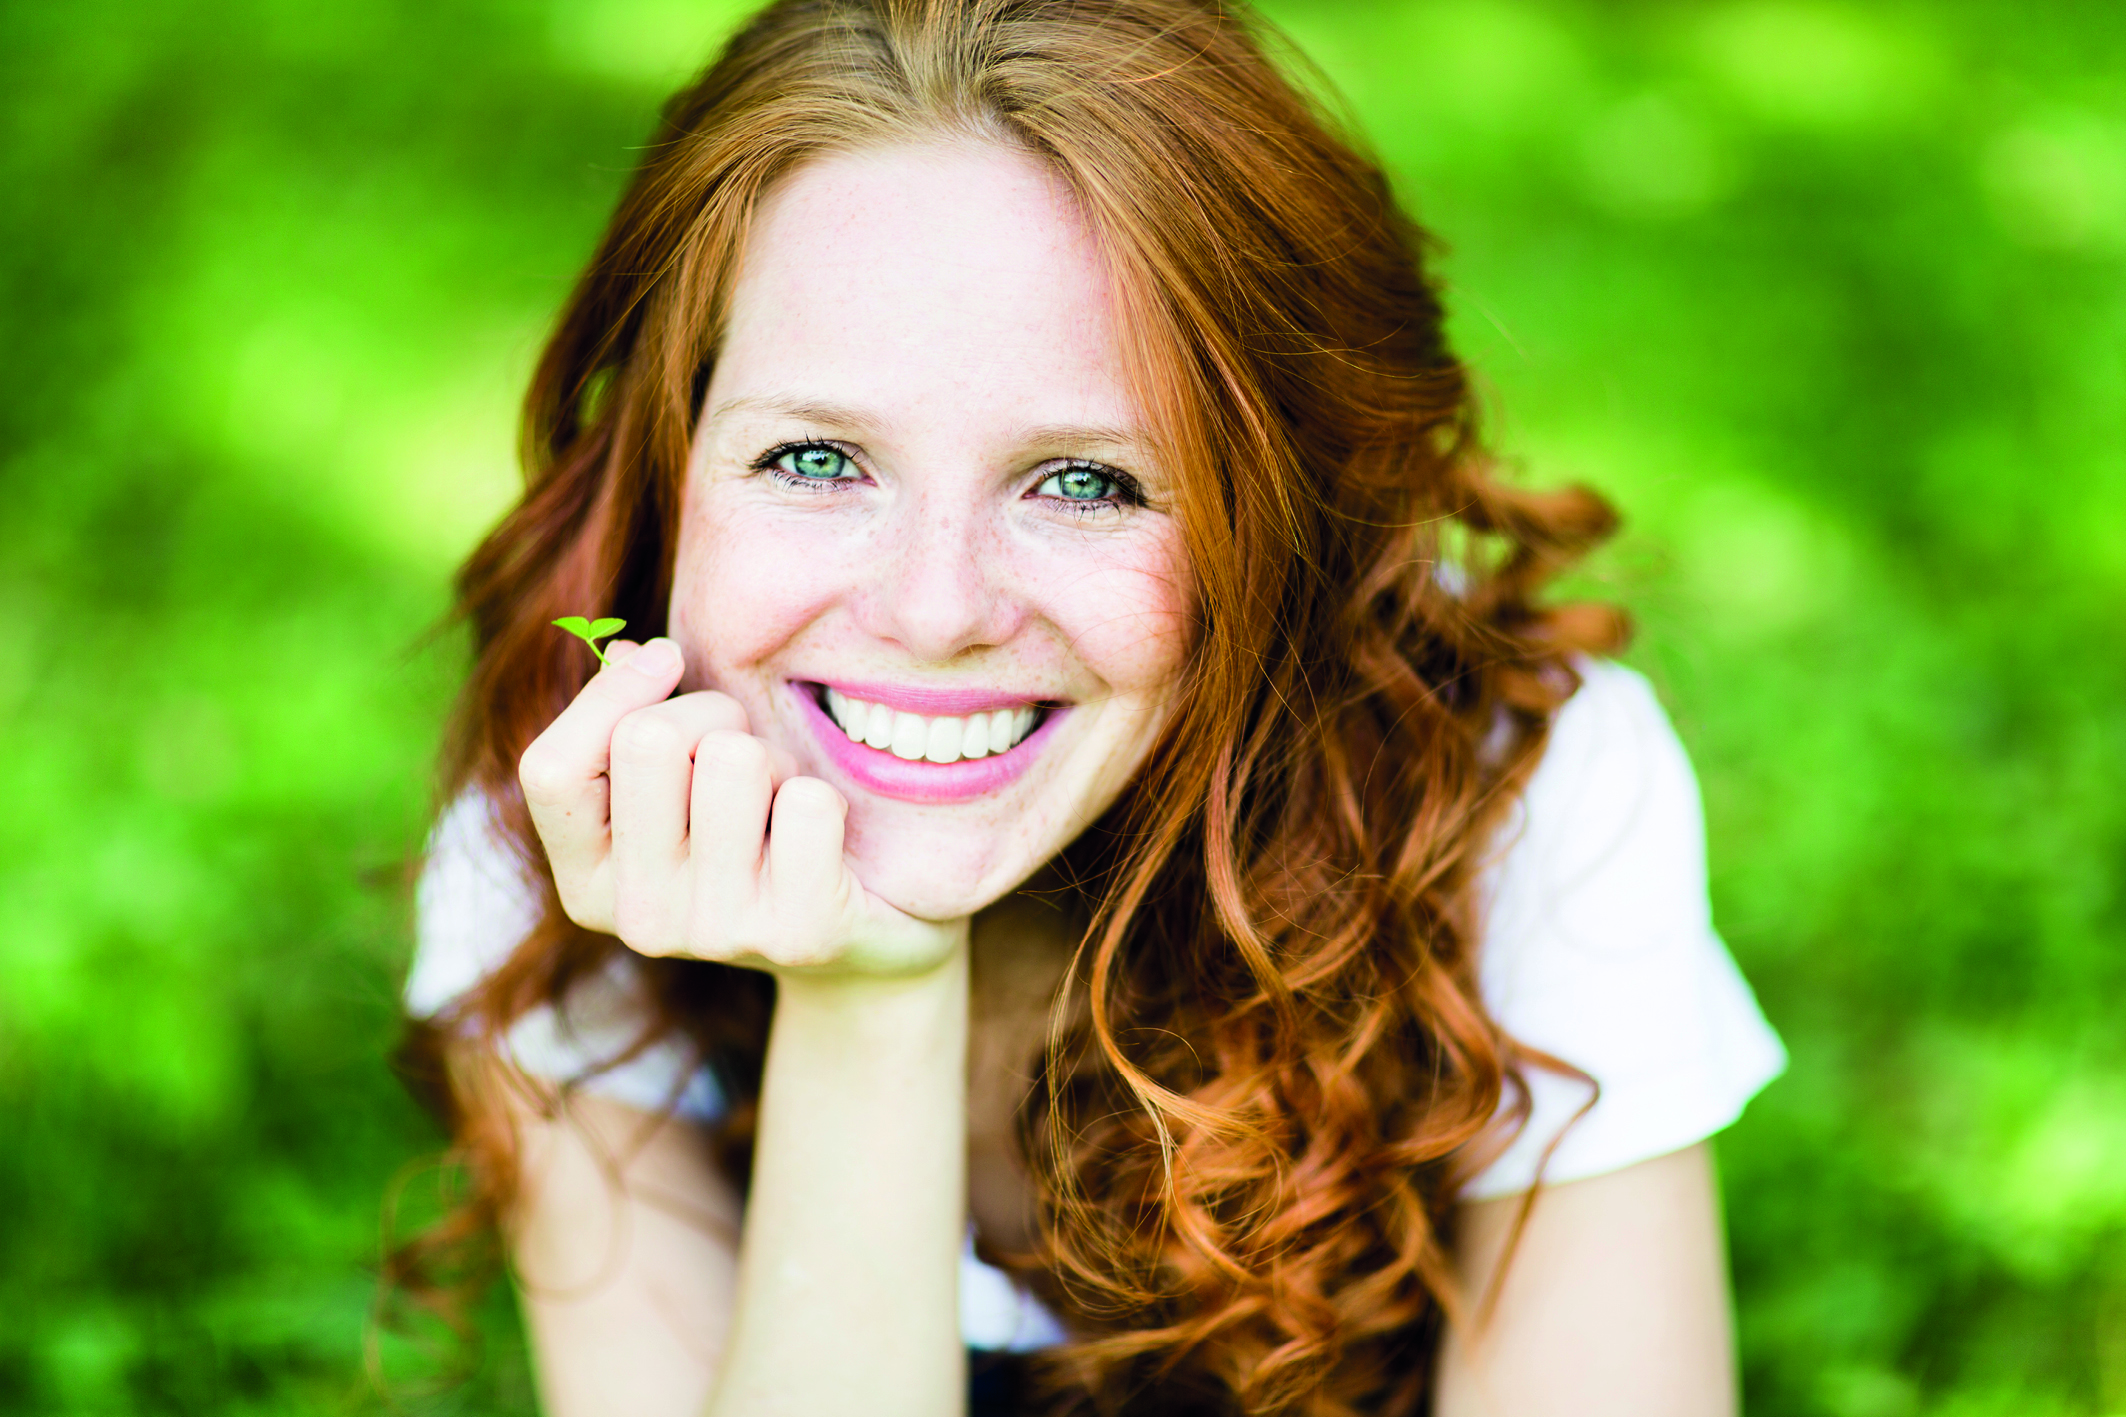 Rothaarige Frau mit strahlendem Lächeln vor grünem Hintergrund. (Erste Hilfe für Zähne)